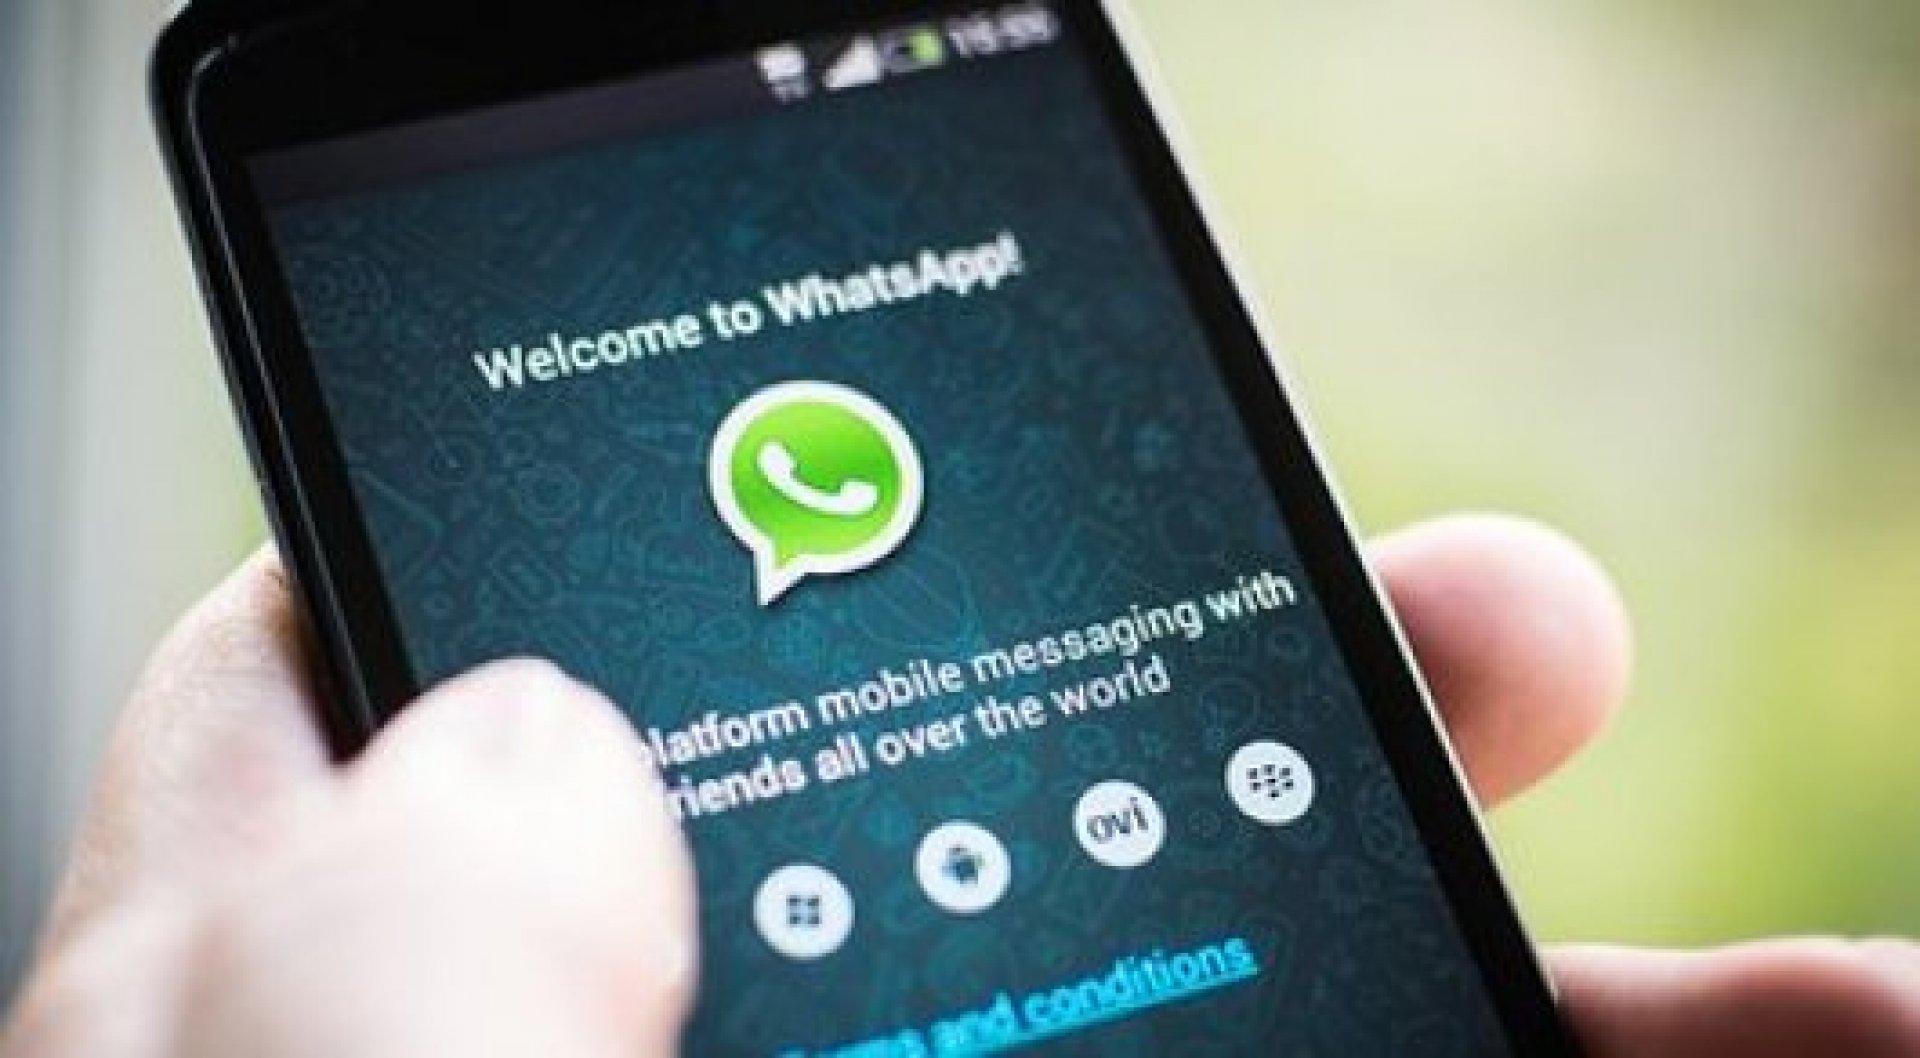 До трех лет тюрьмы грозит жительнице Костаная за шутку по WhatsApp